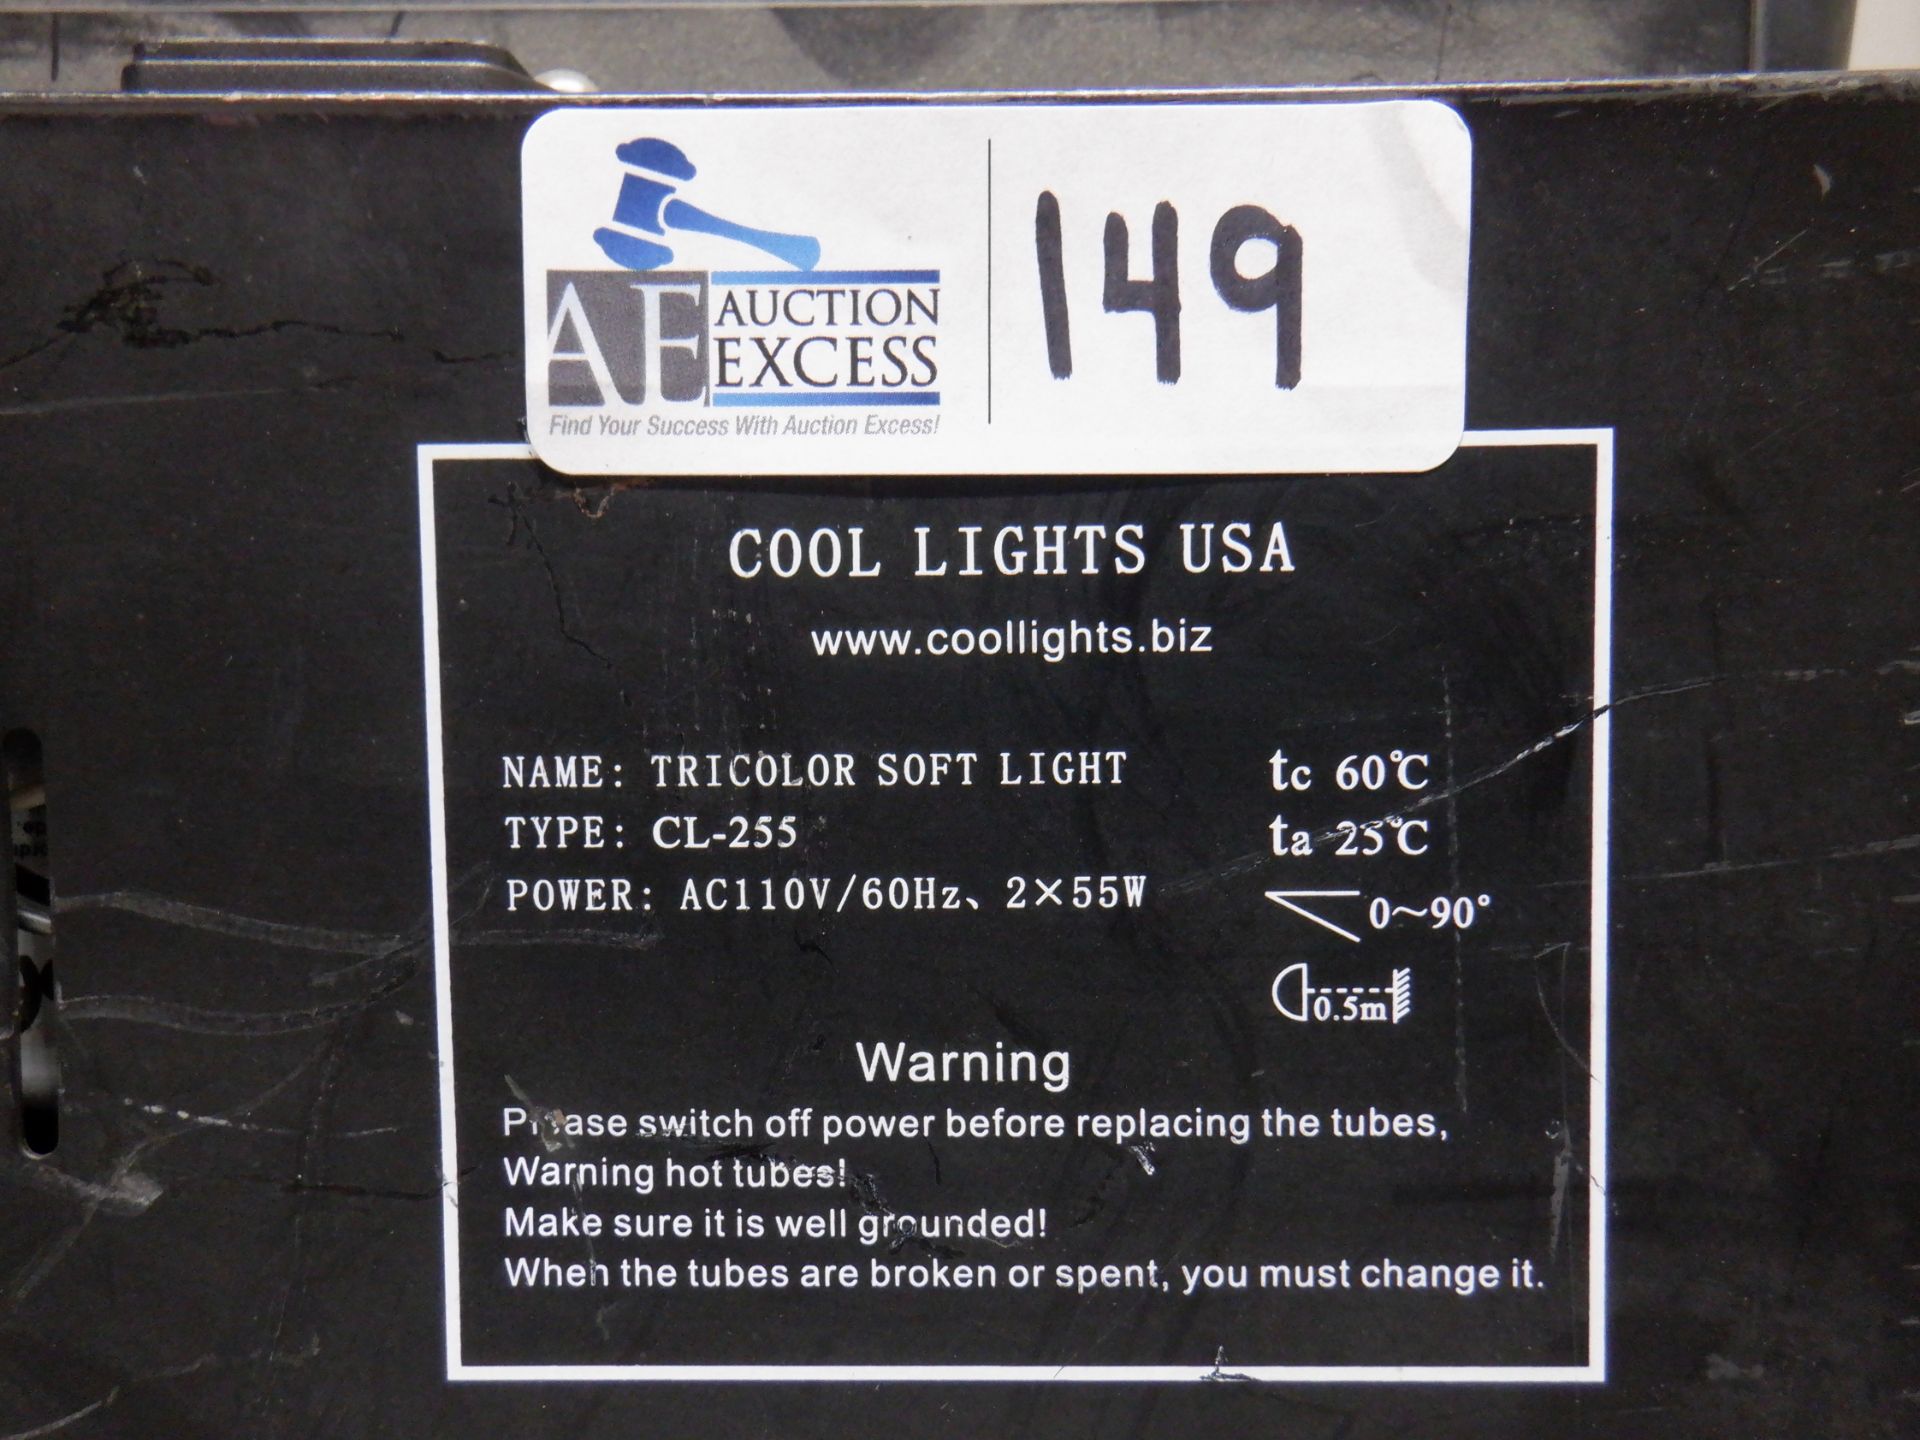 COOL LIGHTS CL-255 SOFT LIGHT - Image 2 of 2